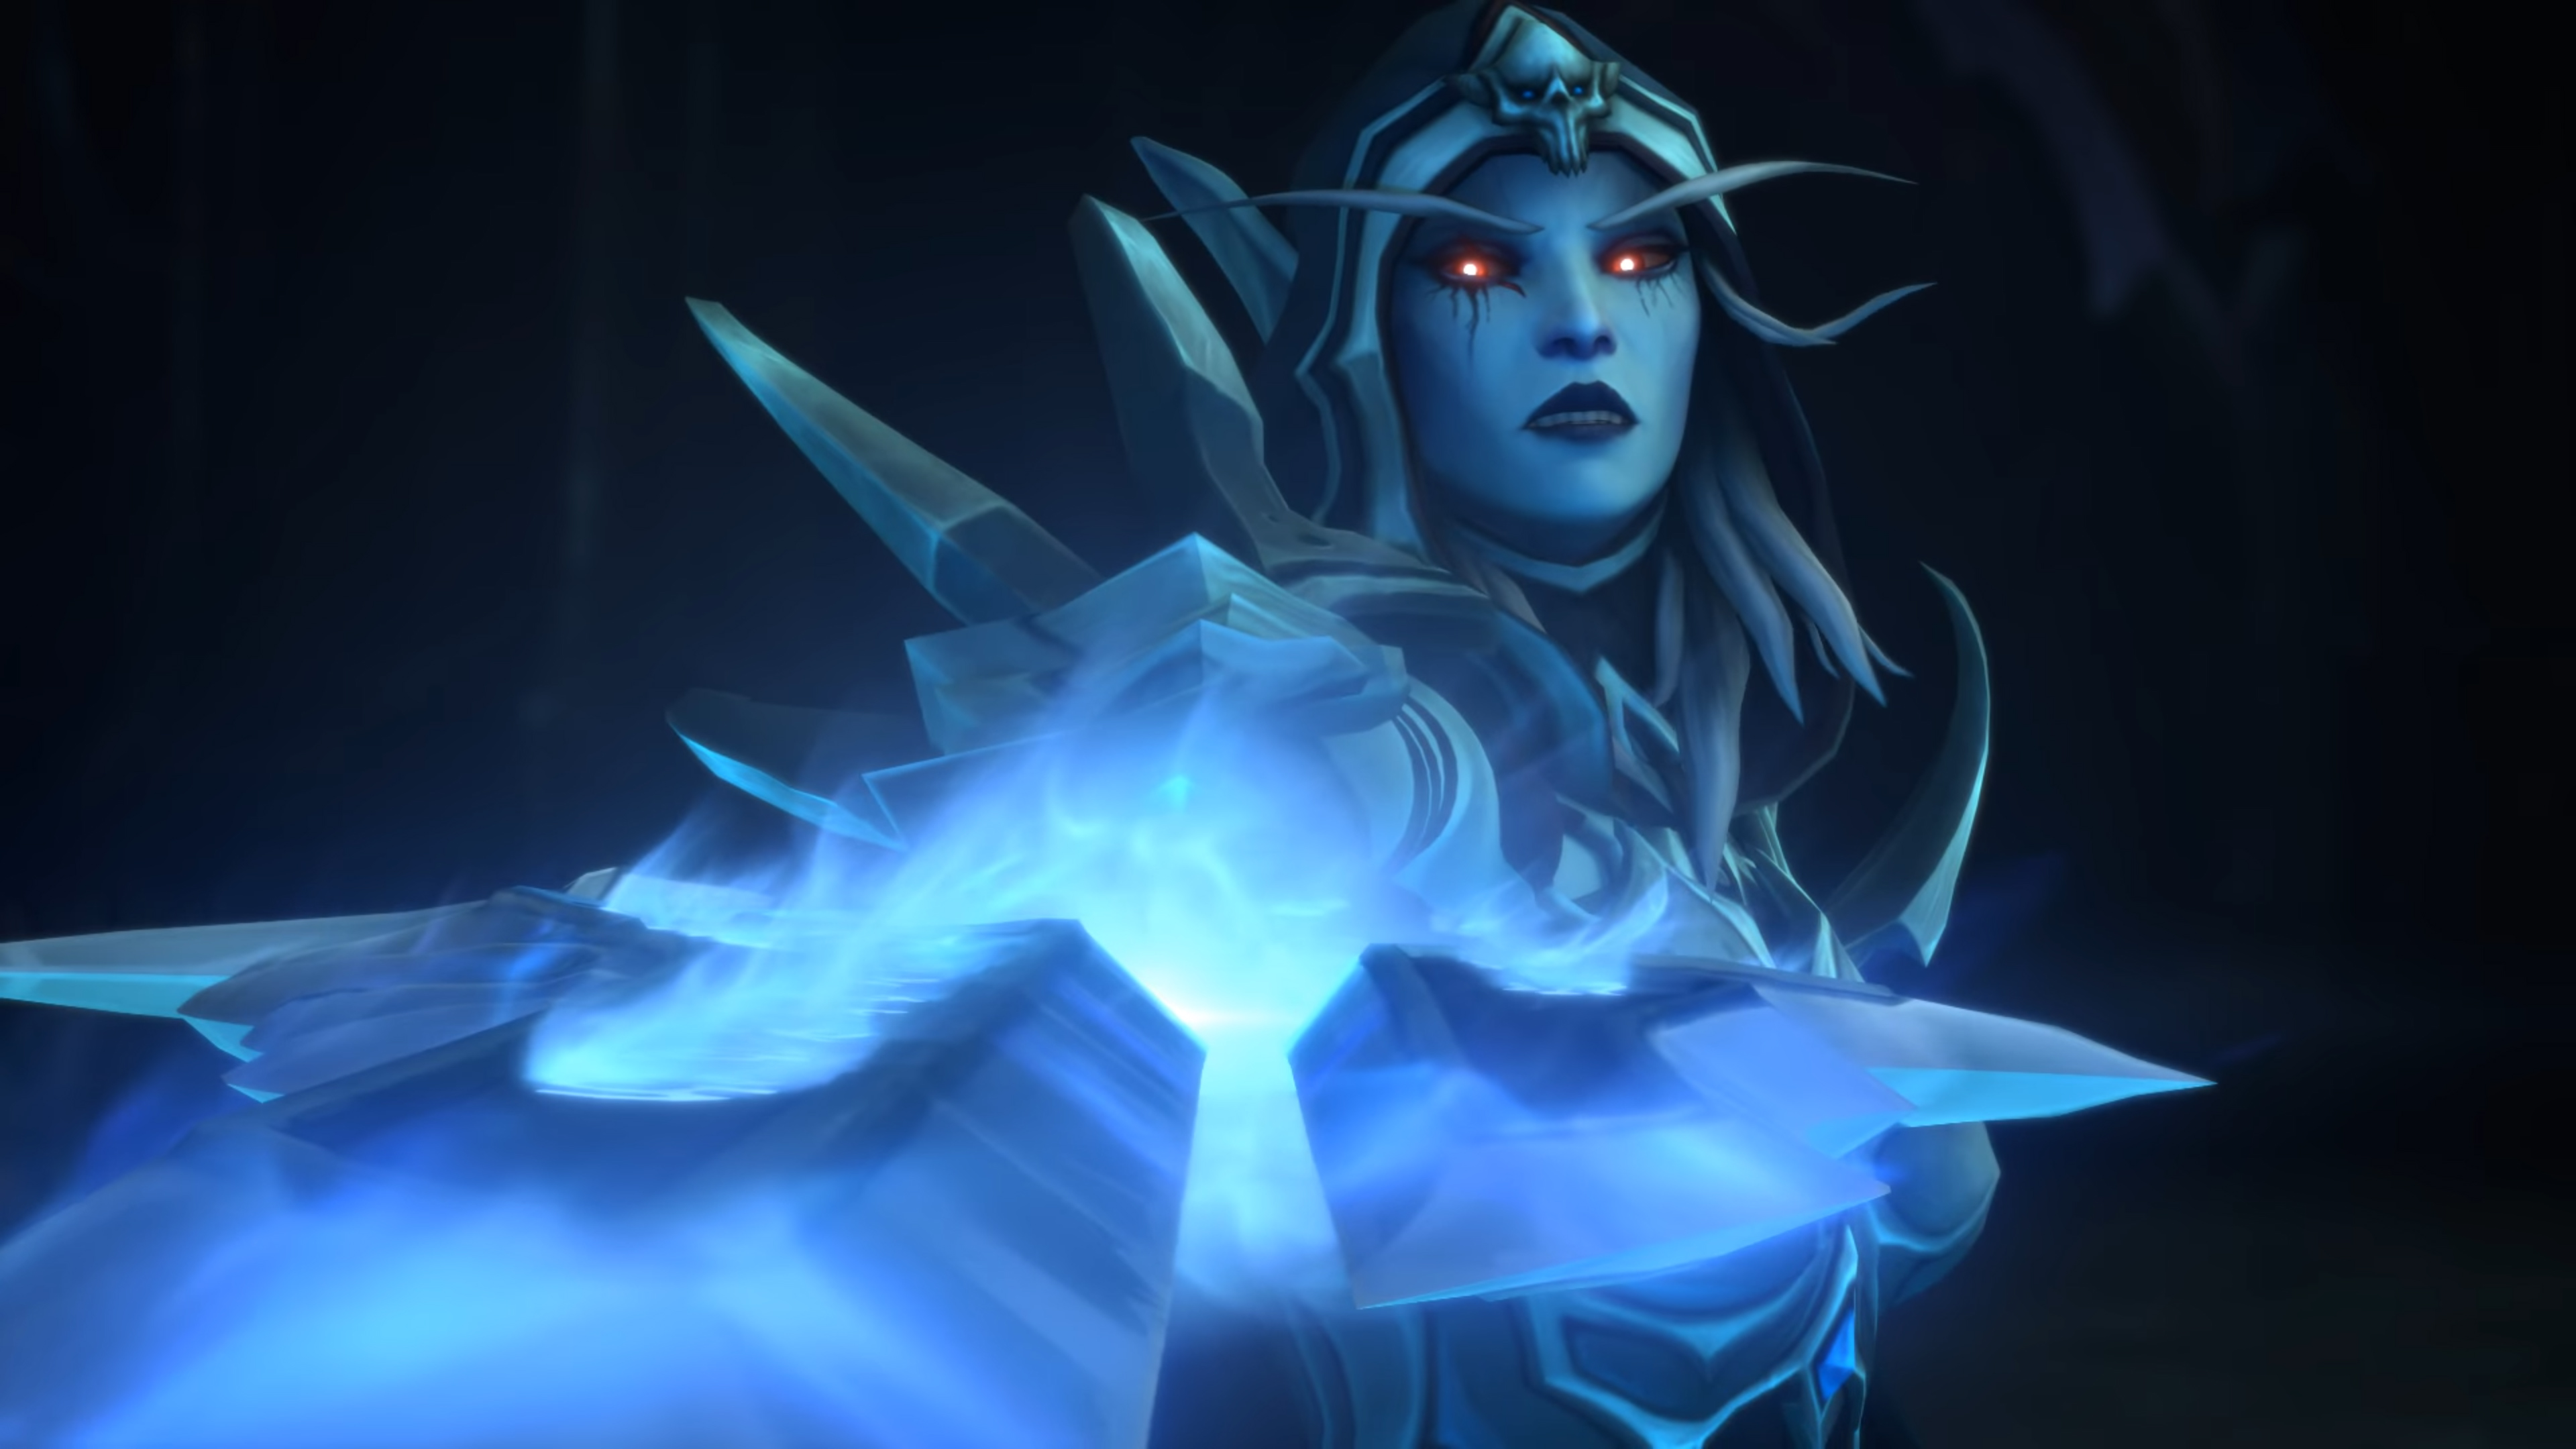  World of Warcraft is bringing back Valor points to make it easier to get endgame gear 